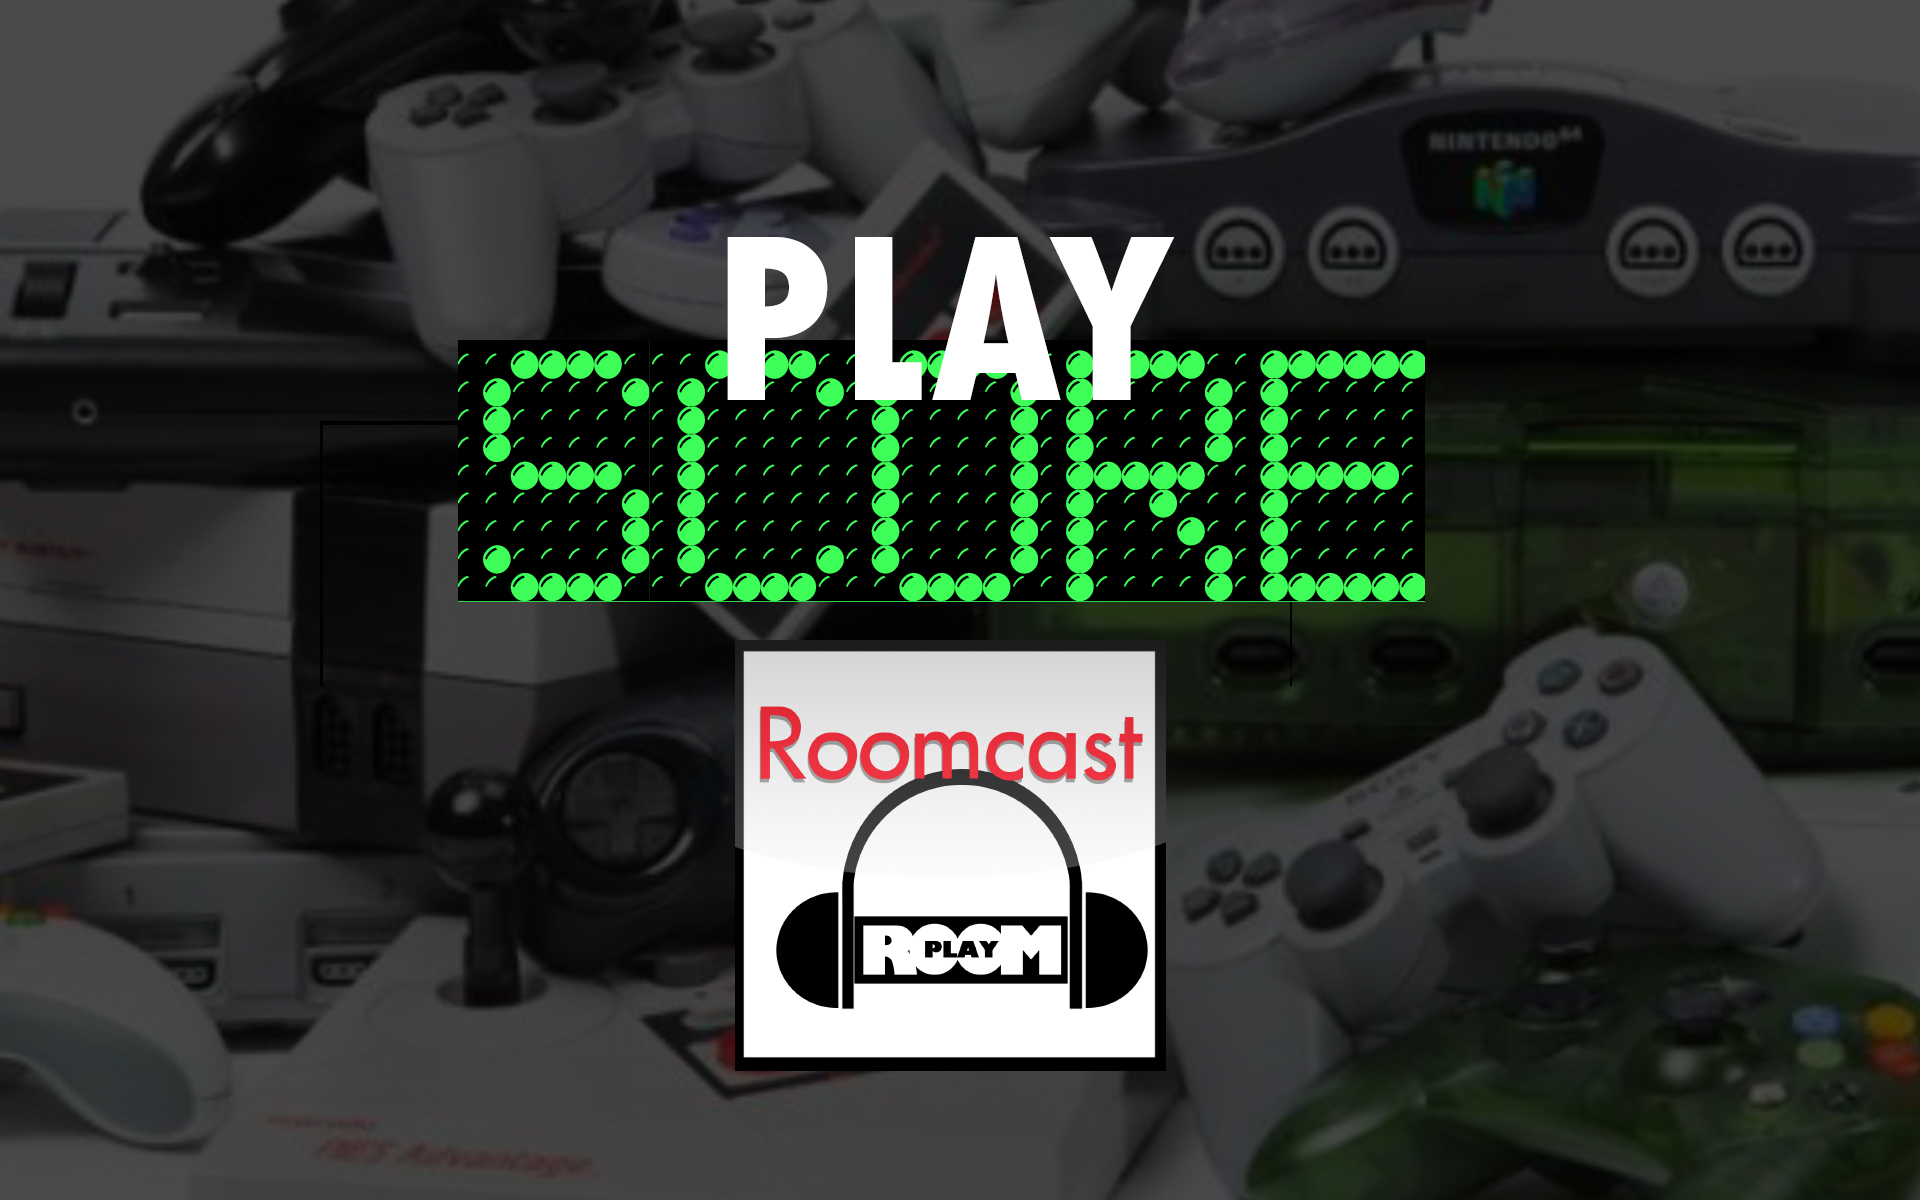 Roomcast 151 Play Score Melhores Consoles De Todos Os Tempos Parte Ii Play Room